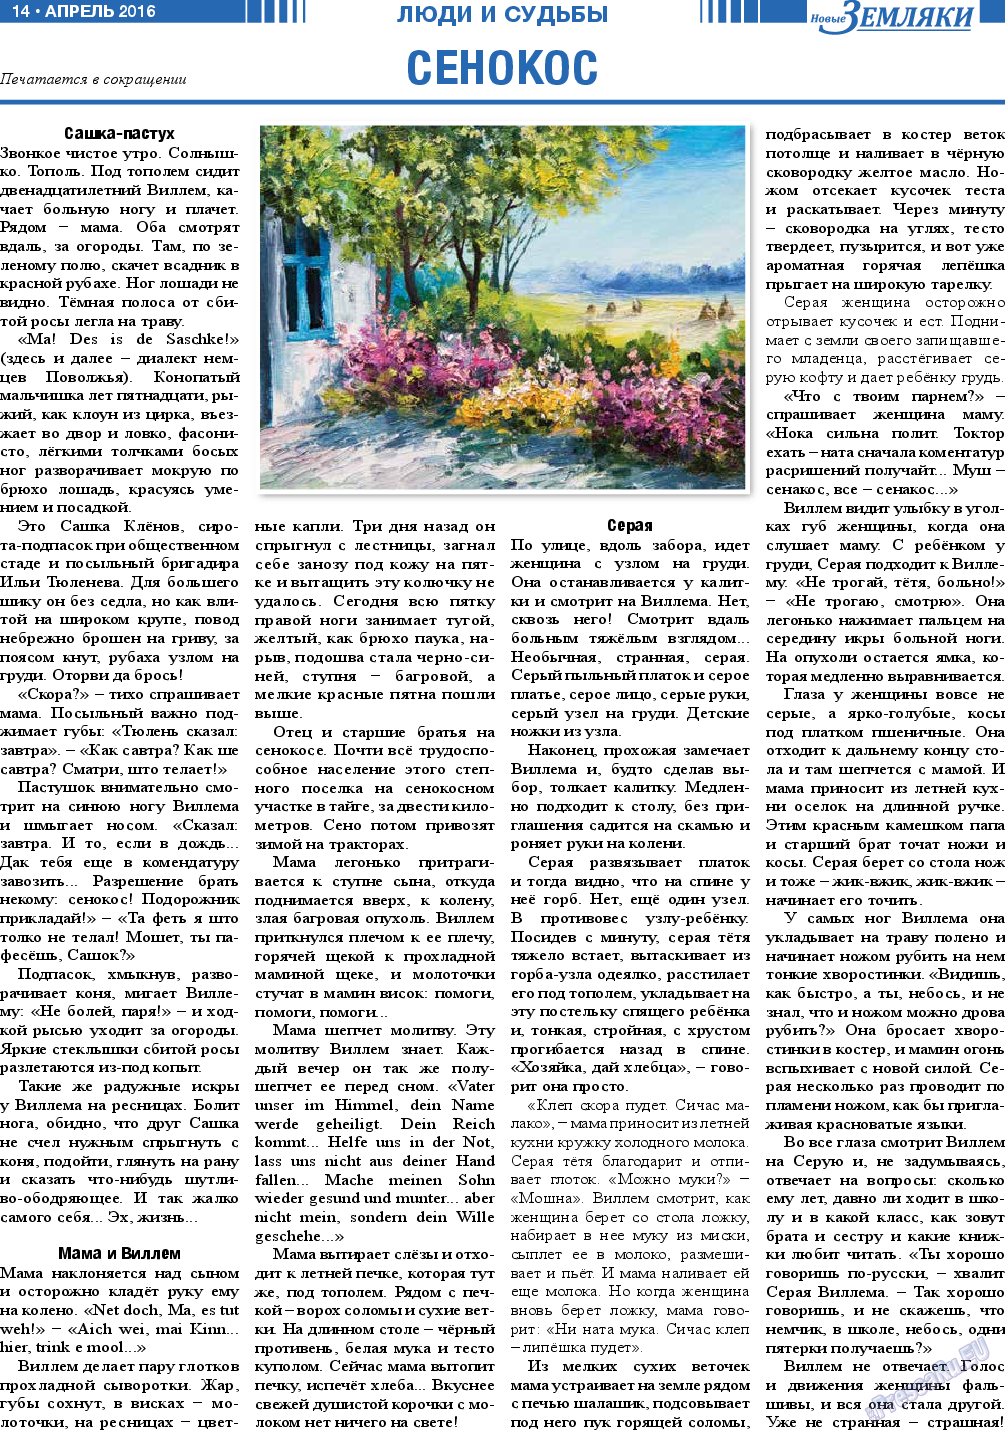 Новые Земляки, газета. 2016 №4 стр.14